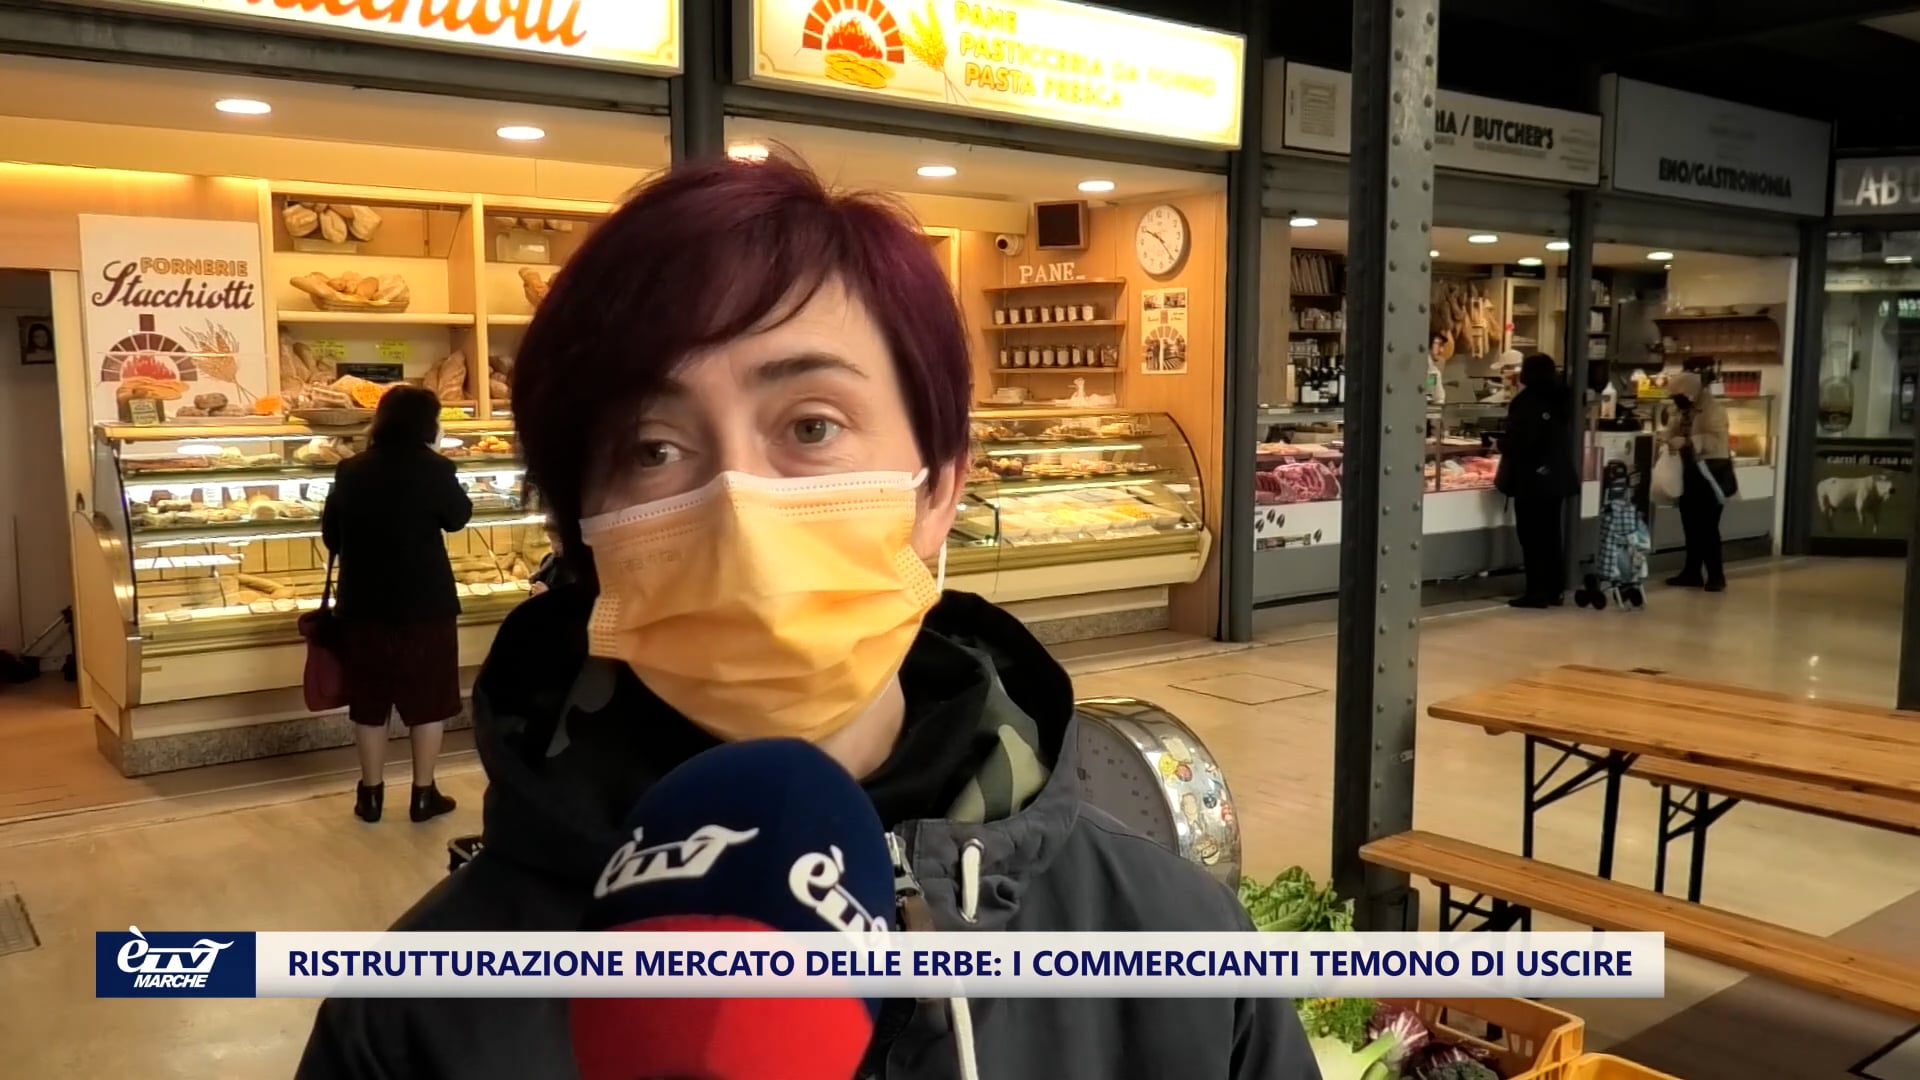 Ristrutturazione Mercato delle Erbe di Ancona. I commercianti temono di uscire - VIDEO